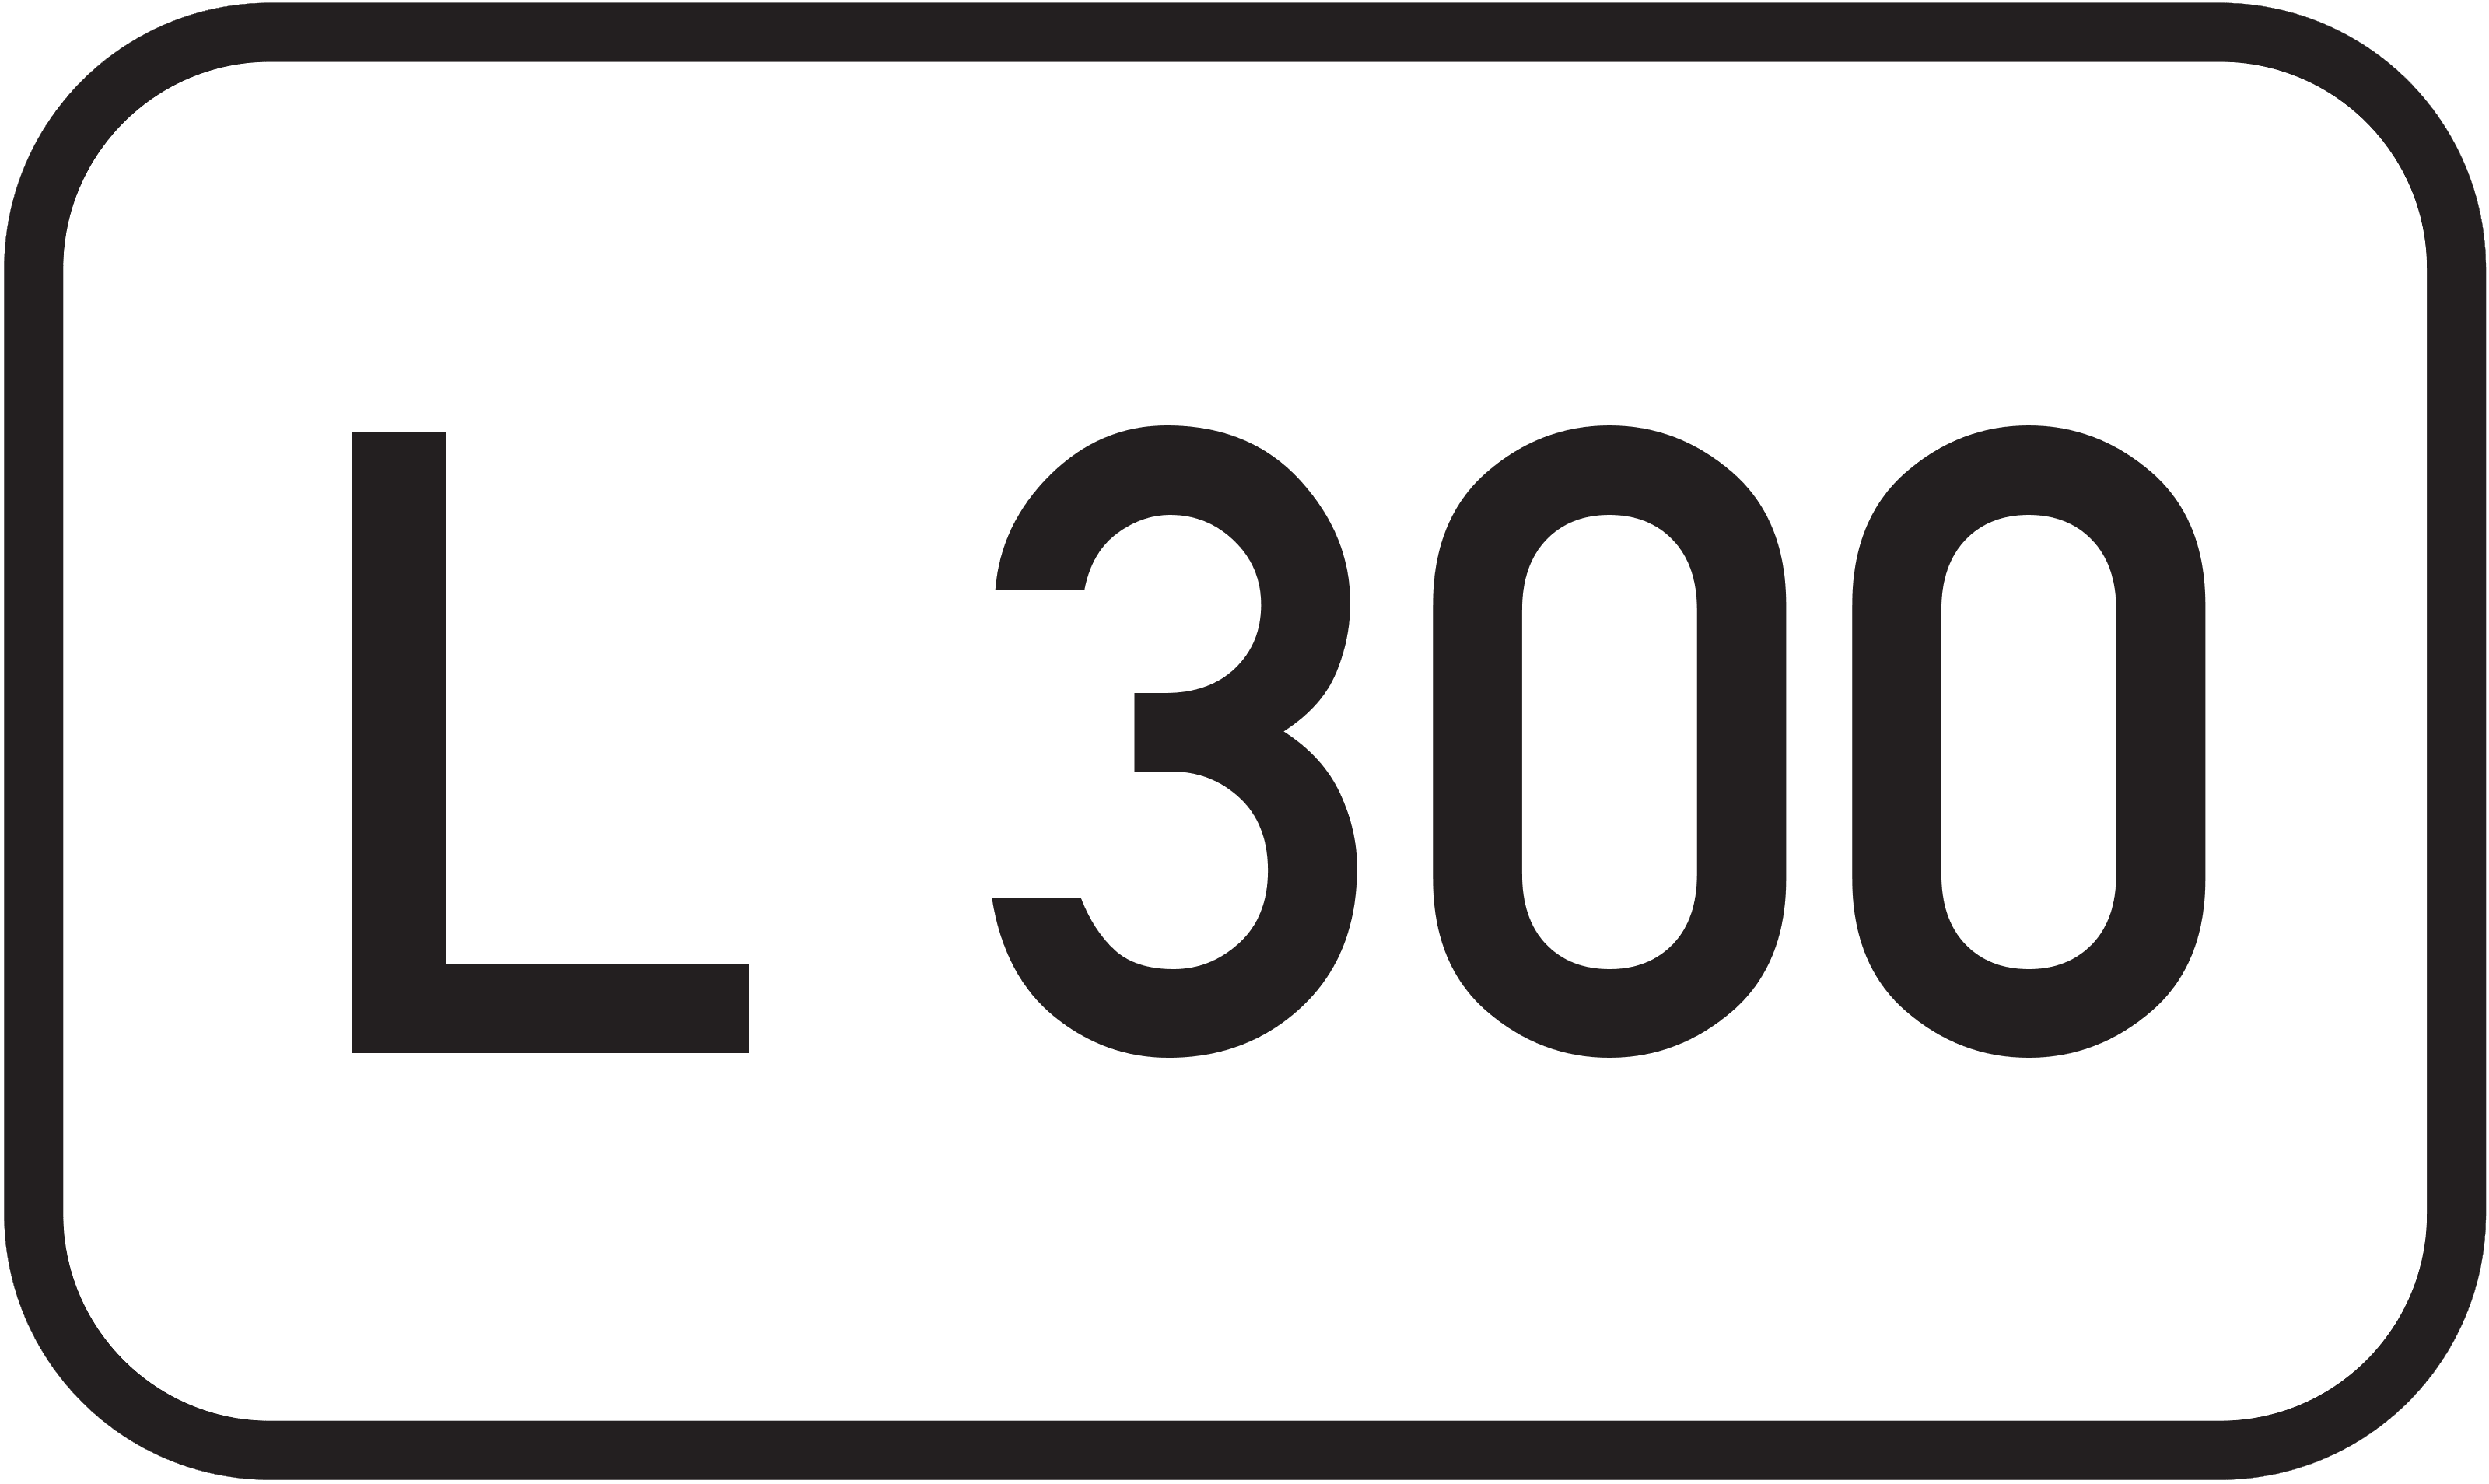 Landesstraße L 300